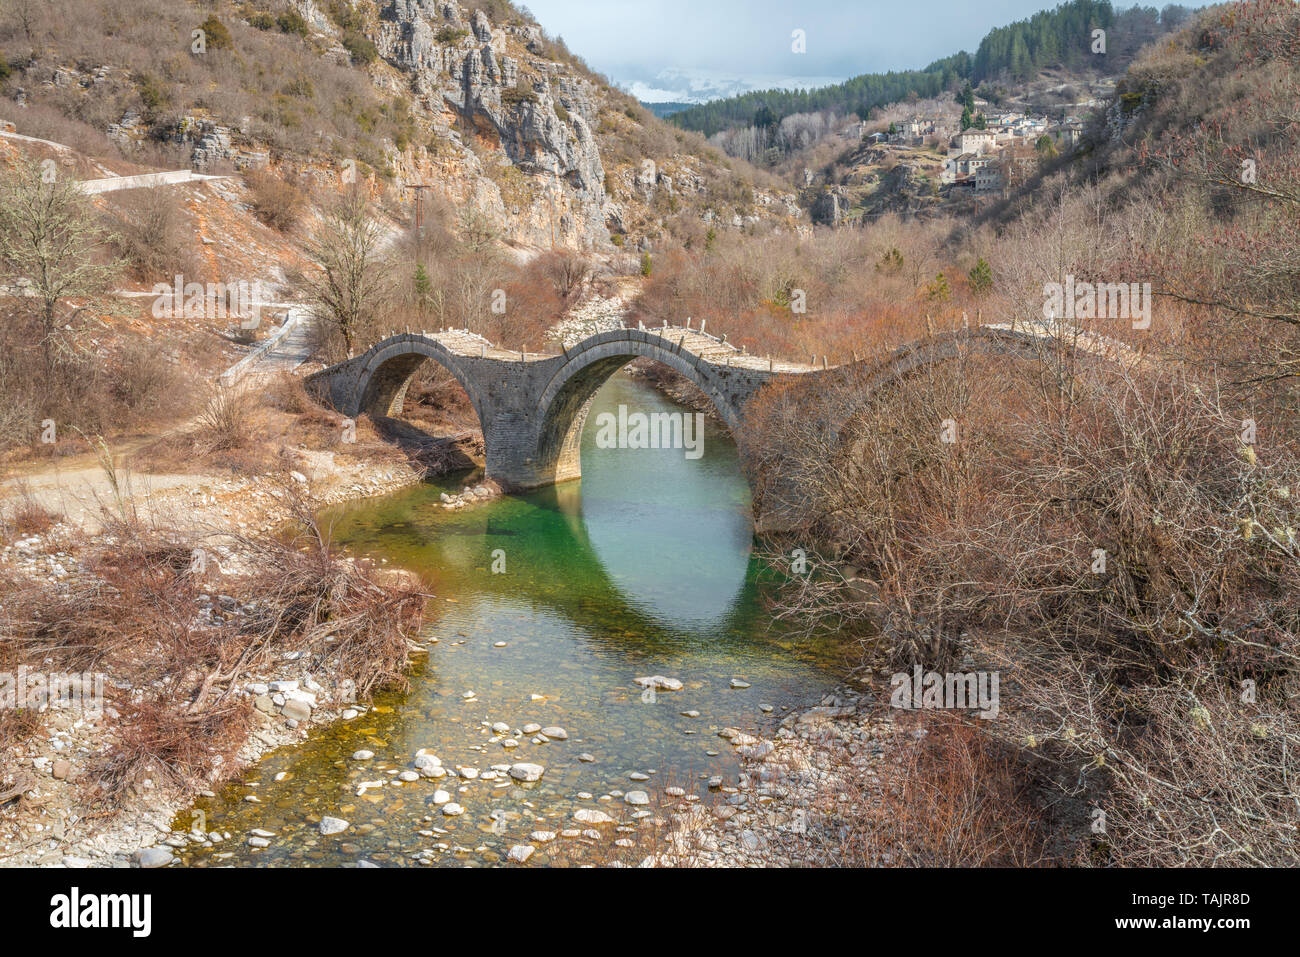 Triple arch Steinbrücke von kalogeriko in Zagoria, Griechenland. Alte steinerne Brücke mit drei Bögen, die einen Fluß überquert, mit smaragdgrünem Wasser in Griechenland Berge. Stockfoto